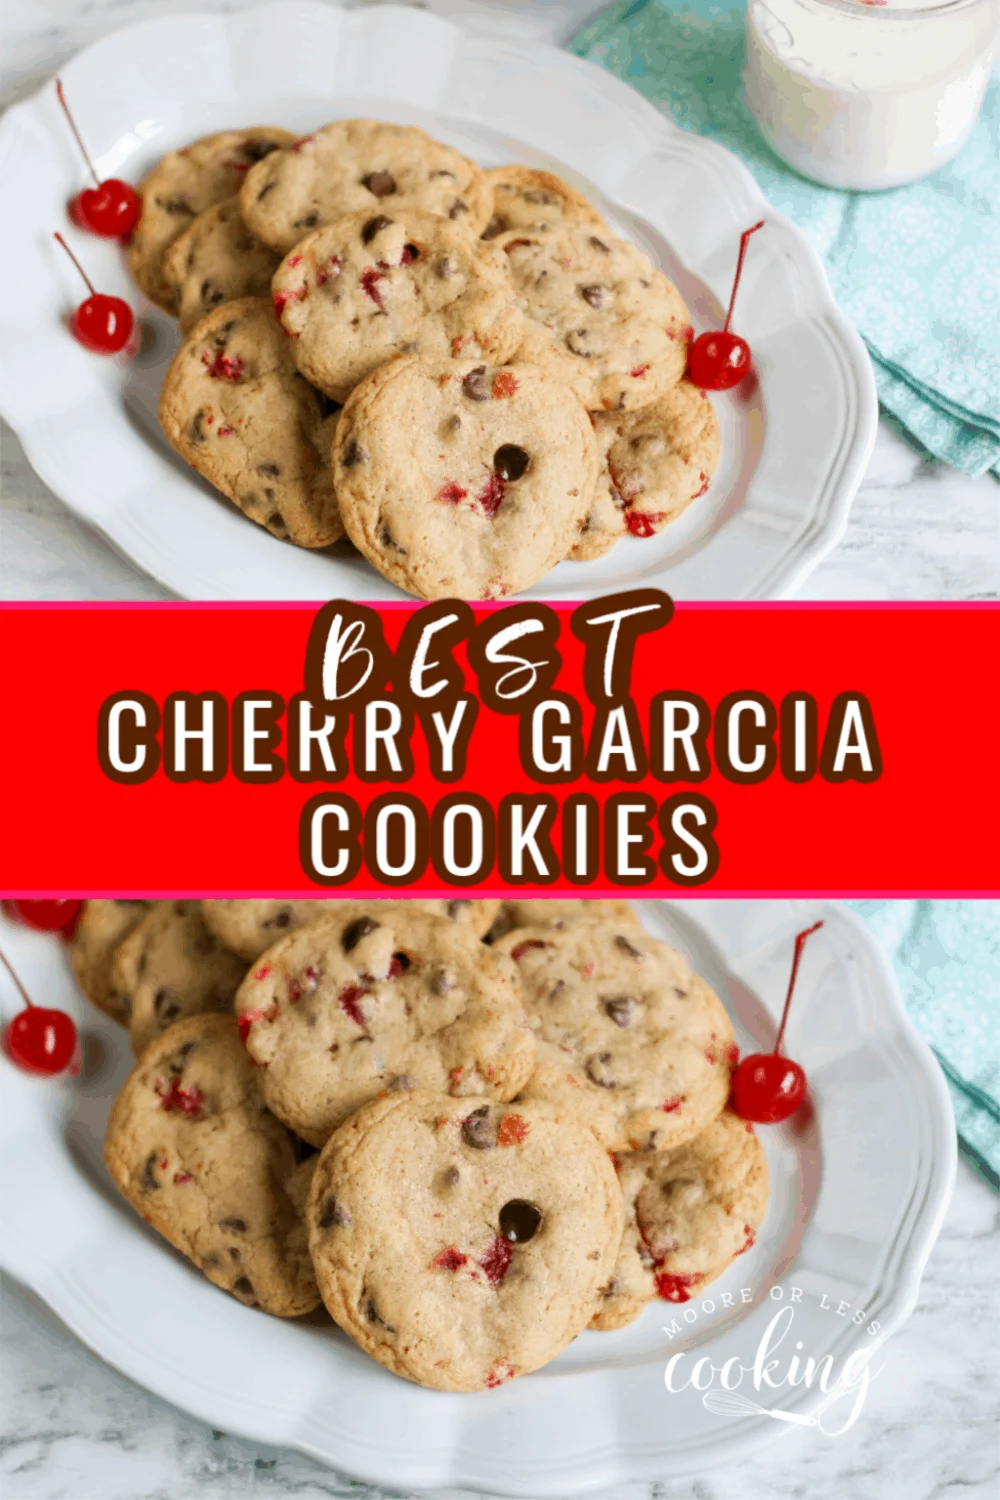 Best Cherry Garcia Cookies